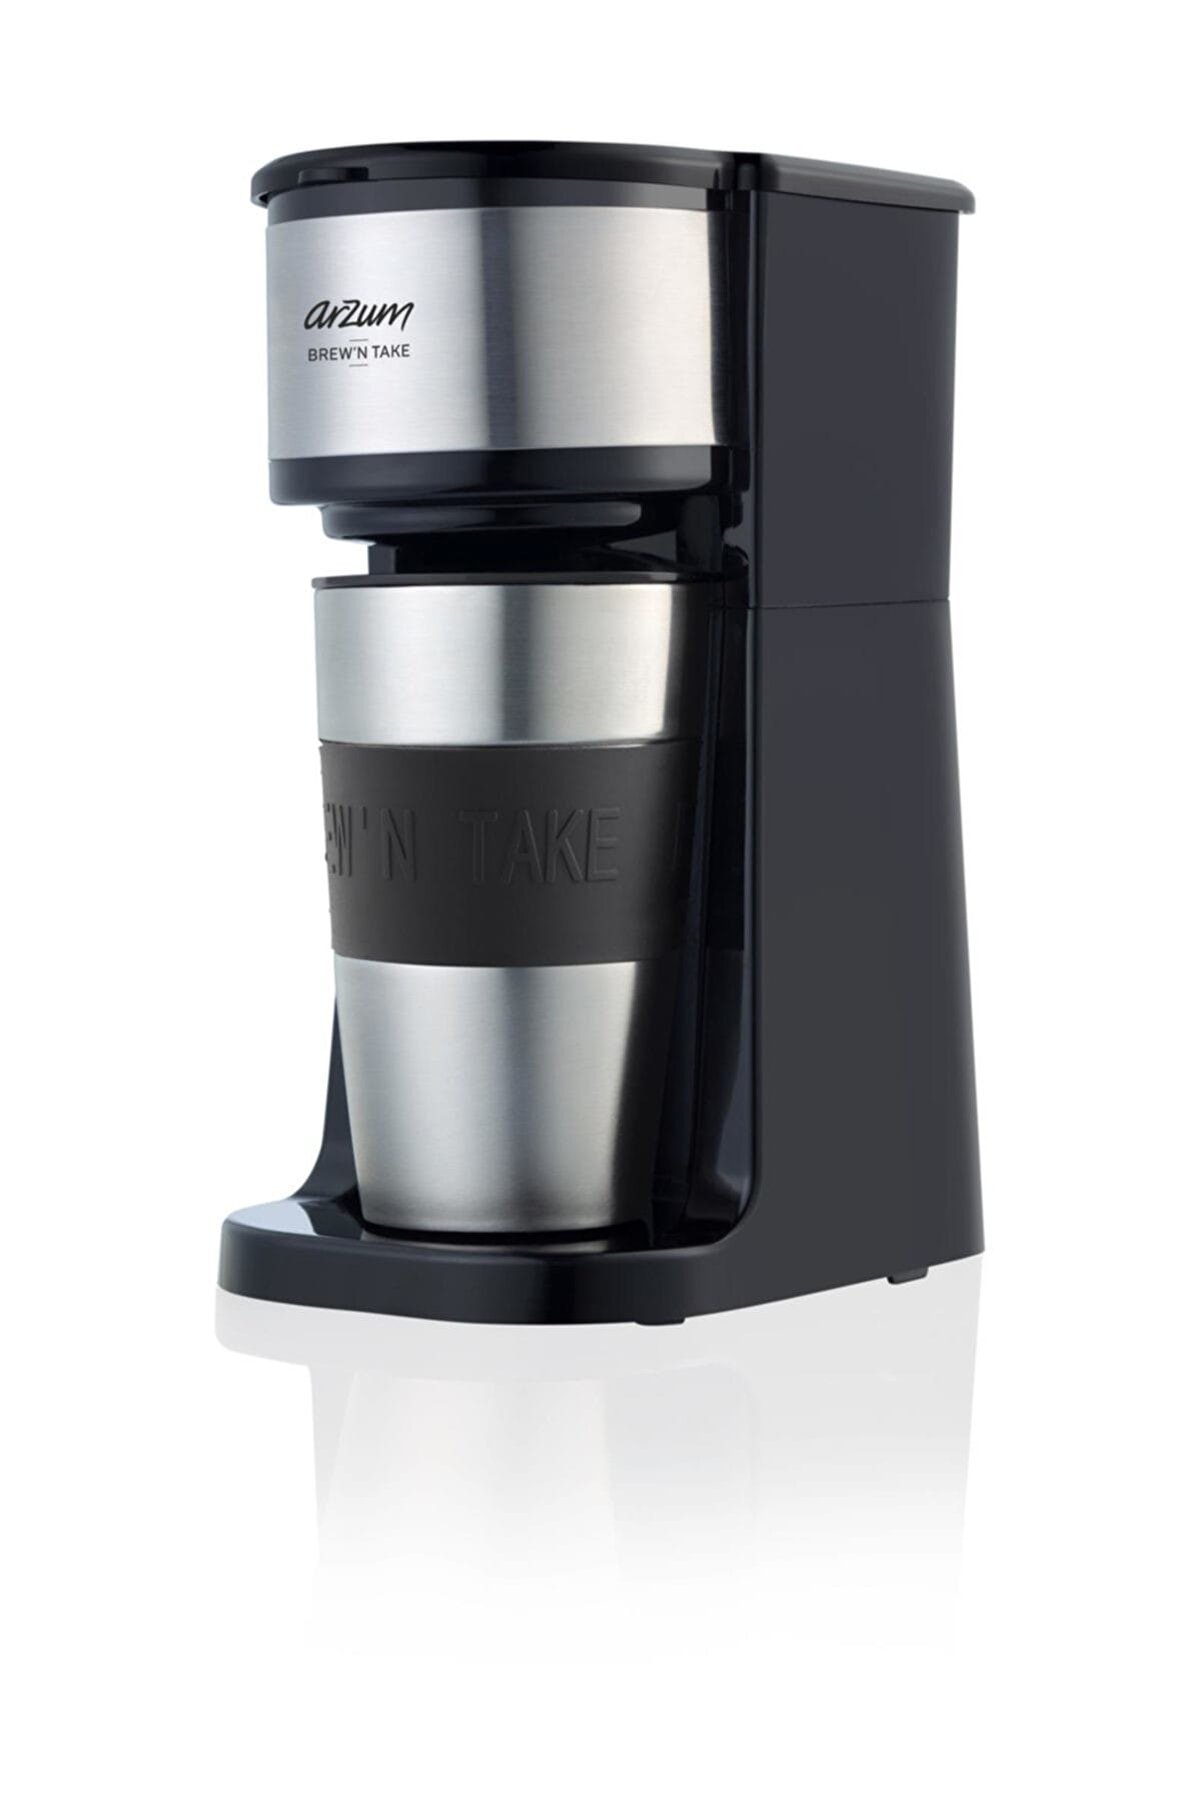 Arzum AR3058 Brew'n Take Kişisel Filtre Kahve Makinesi - Siyah